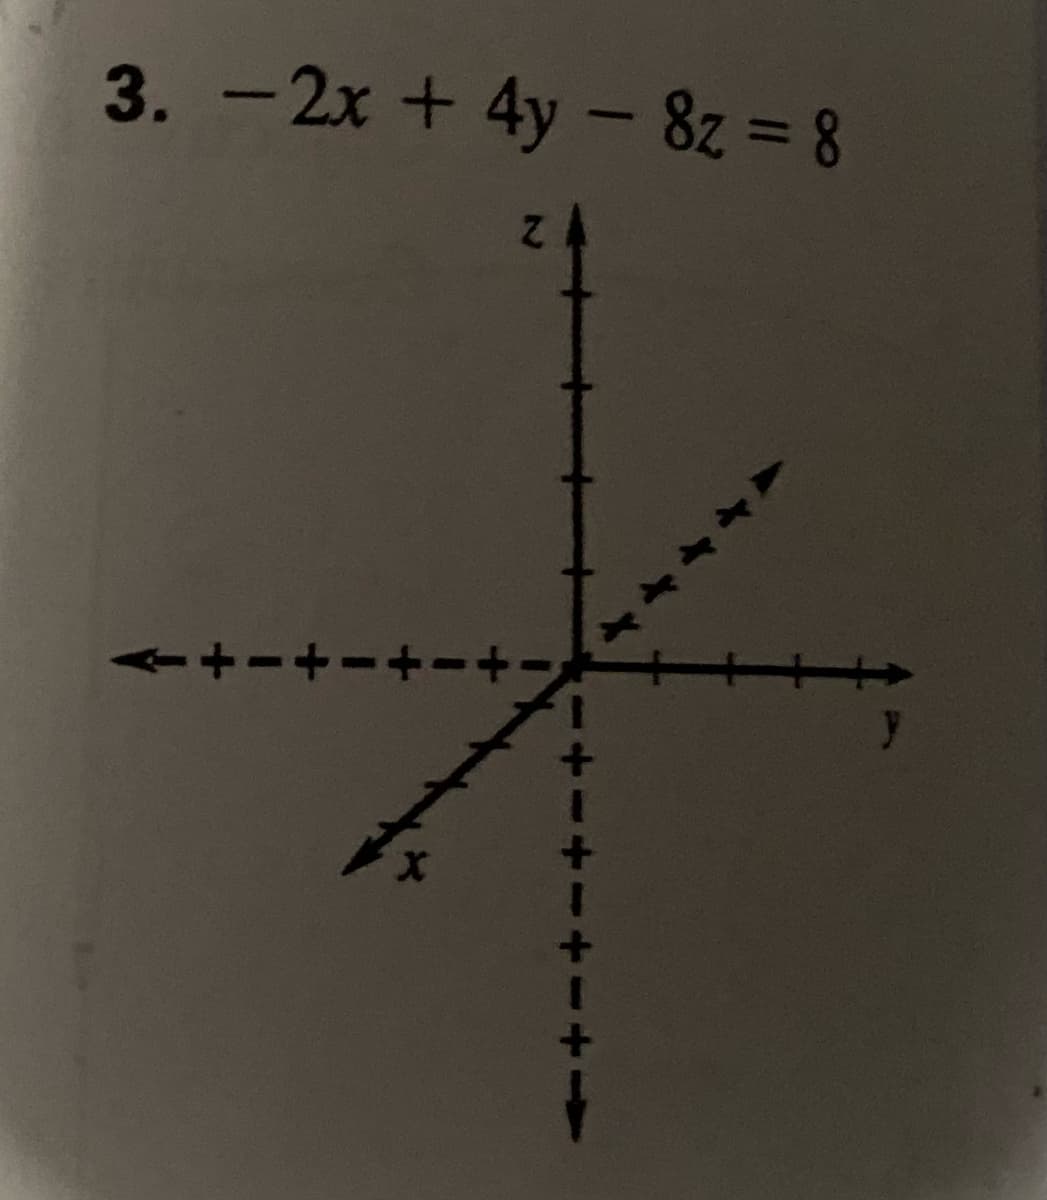 3. - 2x + 4y – 8z = 8
